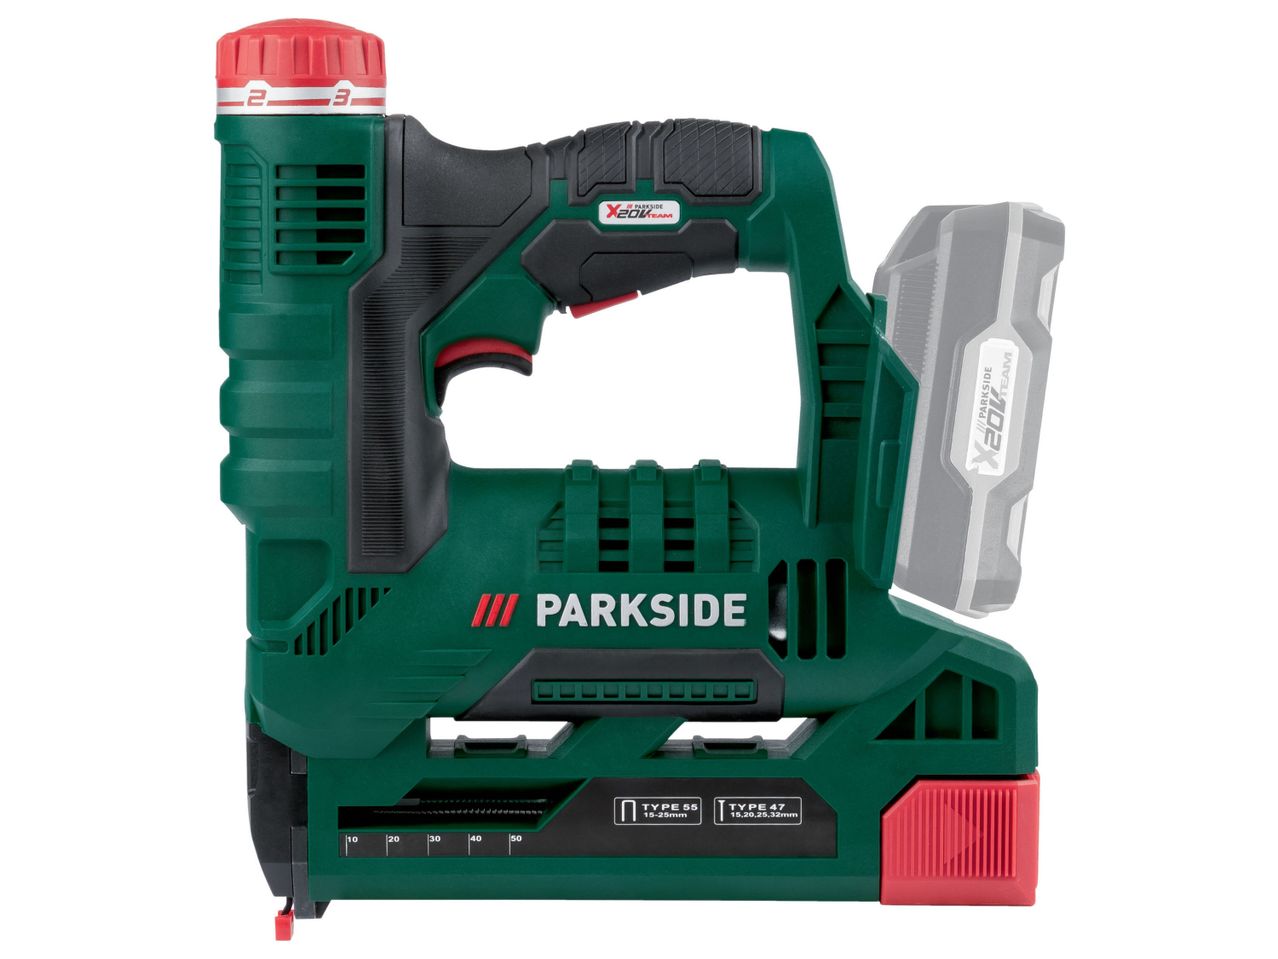 Ver empliada: Parkside® Agrafador 20 V sem Bateria - Imagem 1